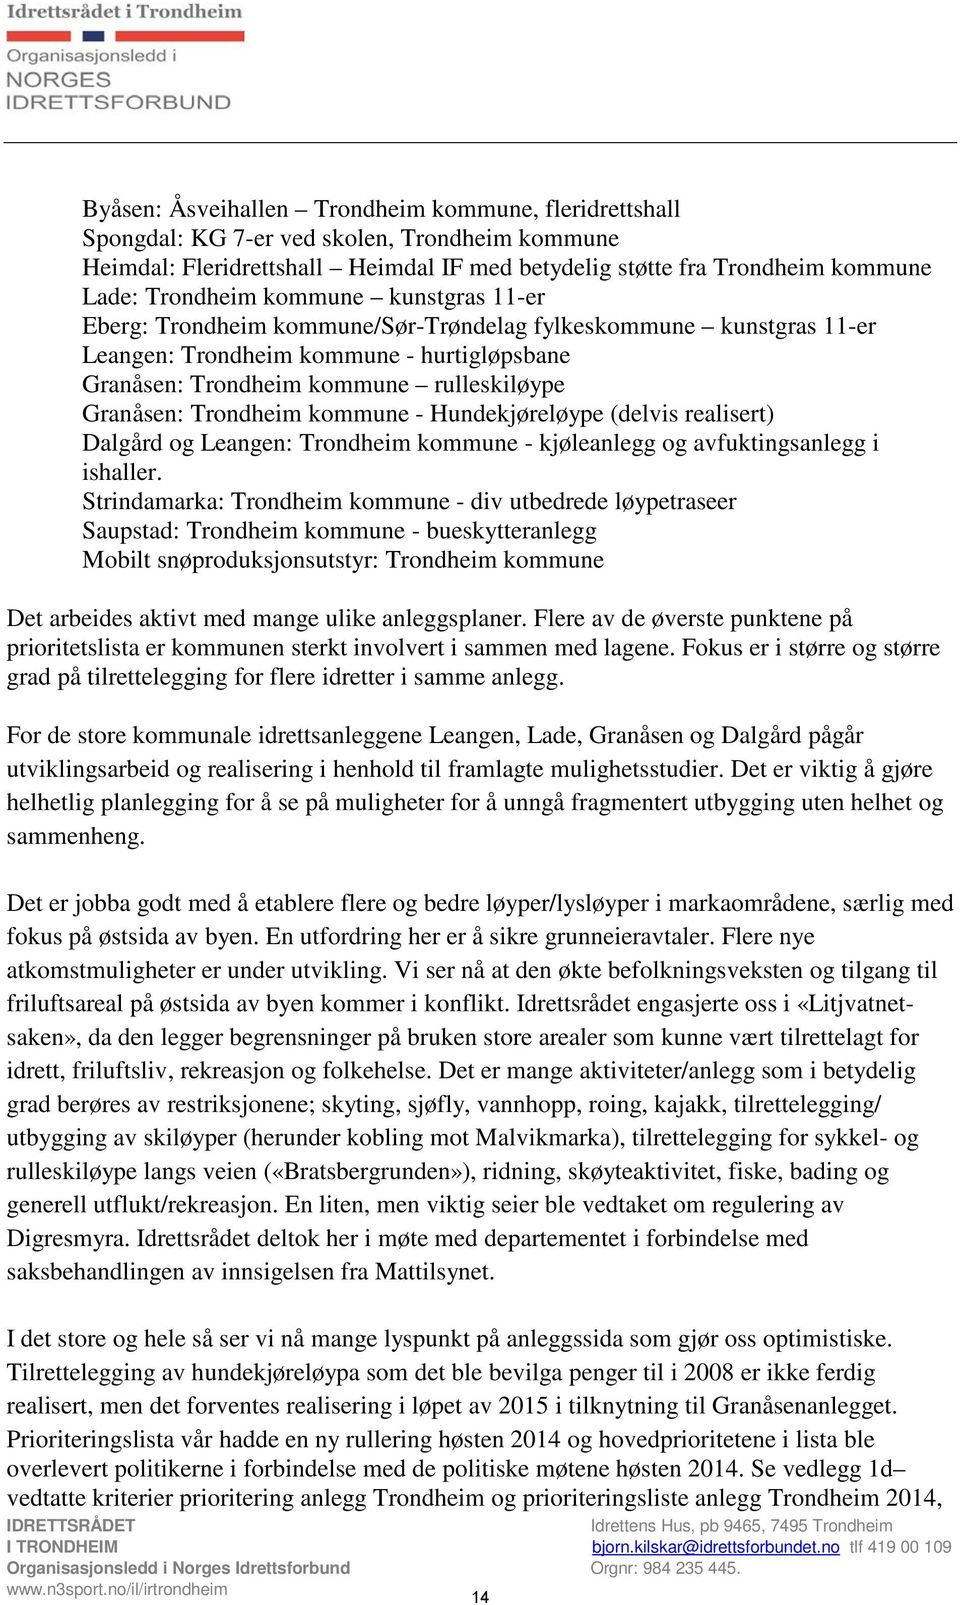 kommune - Hundekjøreløype (delvis realisert) Dalgård og Leangen: Trondheim kommune - kjøleanlegg og avfuktingsanlegg i ishaller.